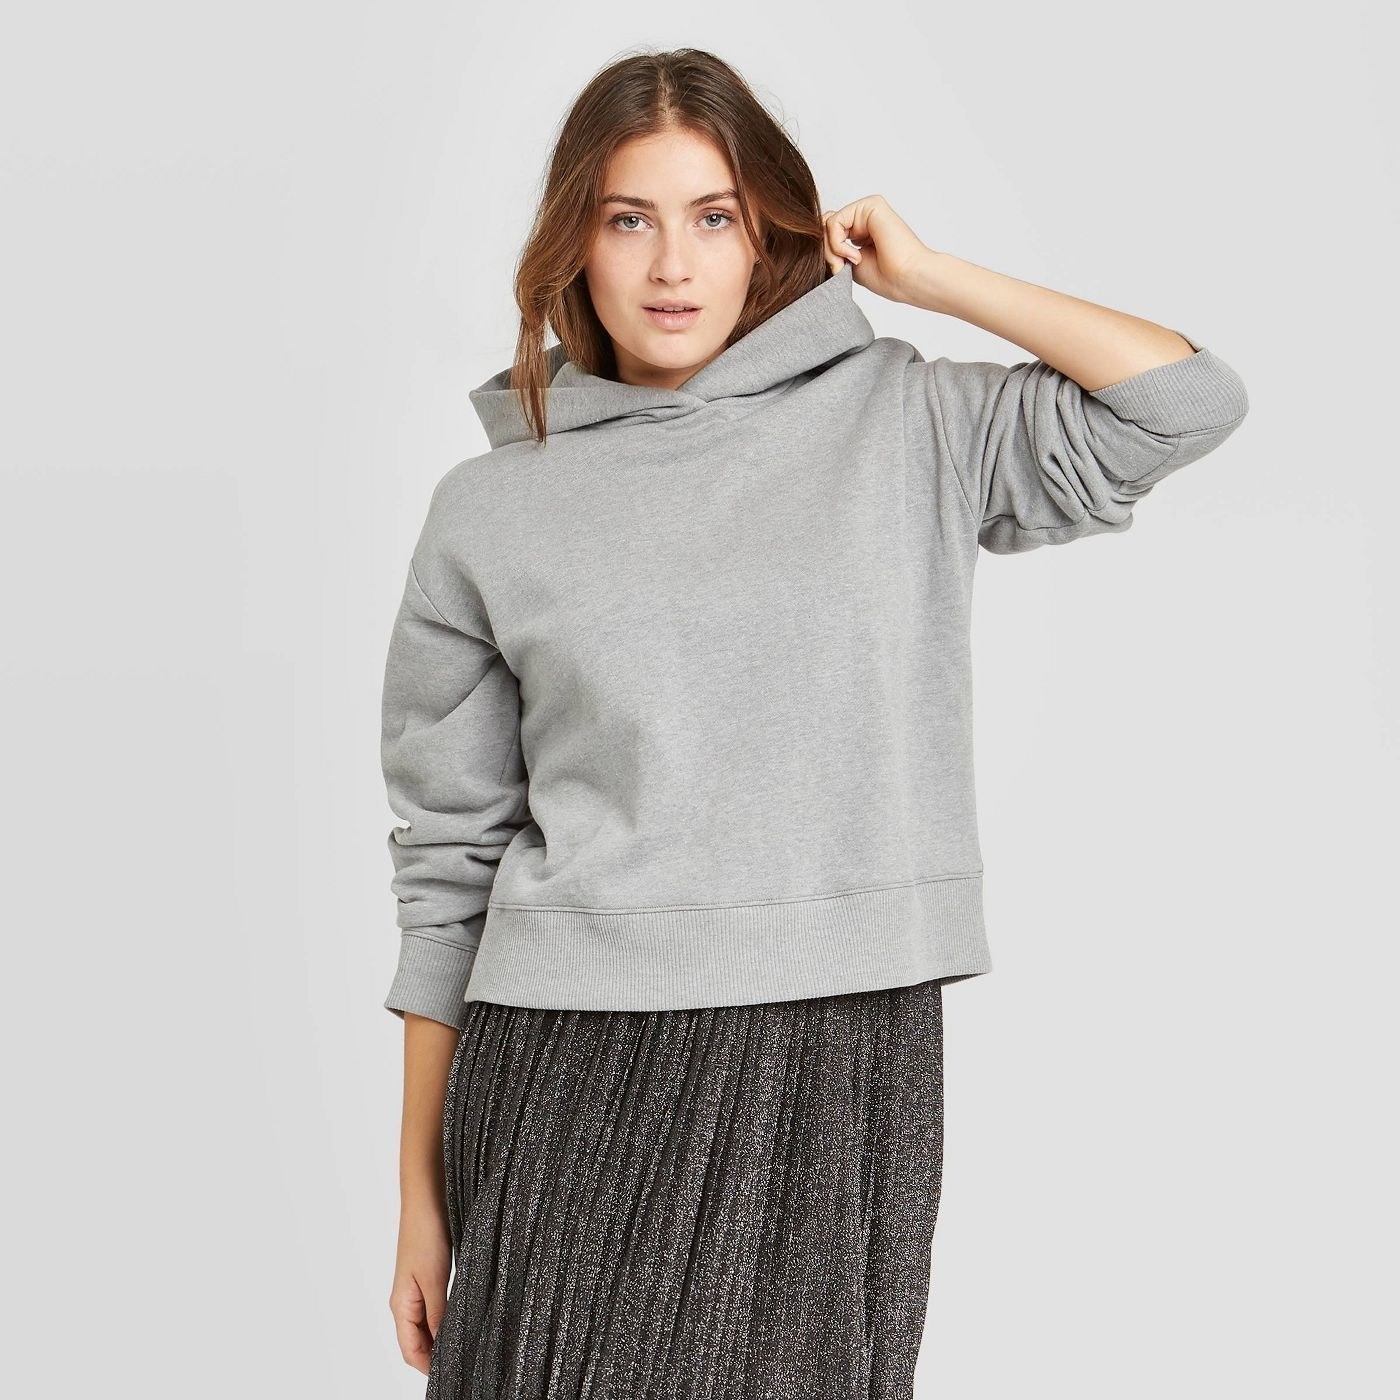 model wearing a grey sweatshirt